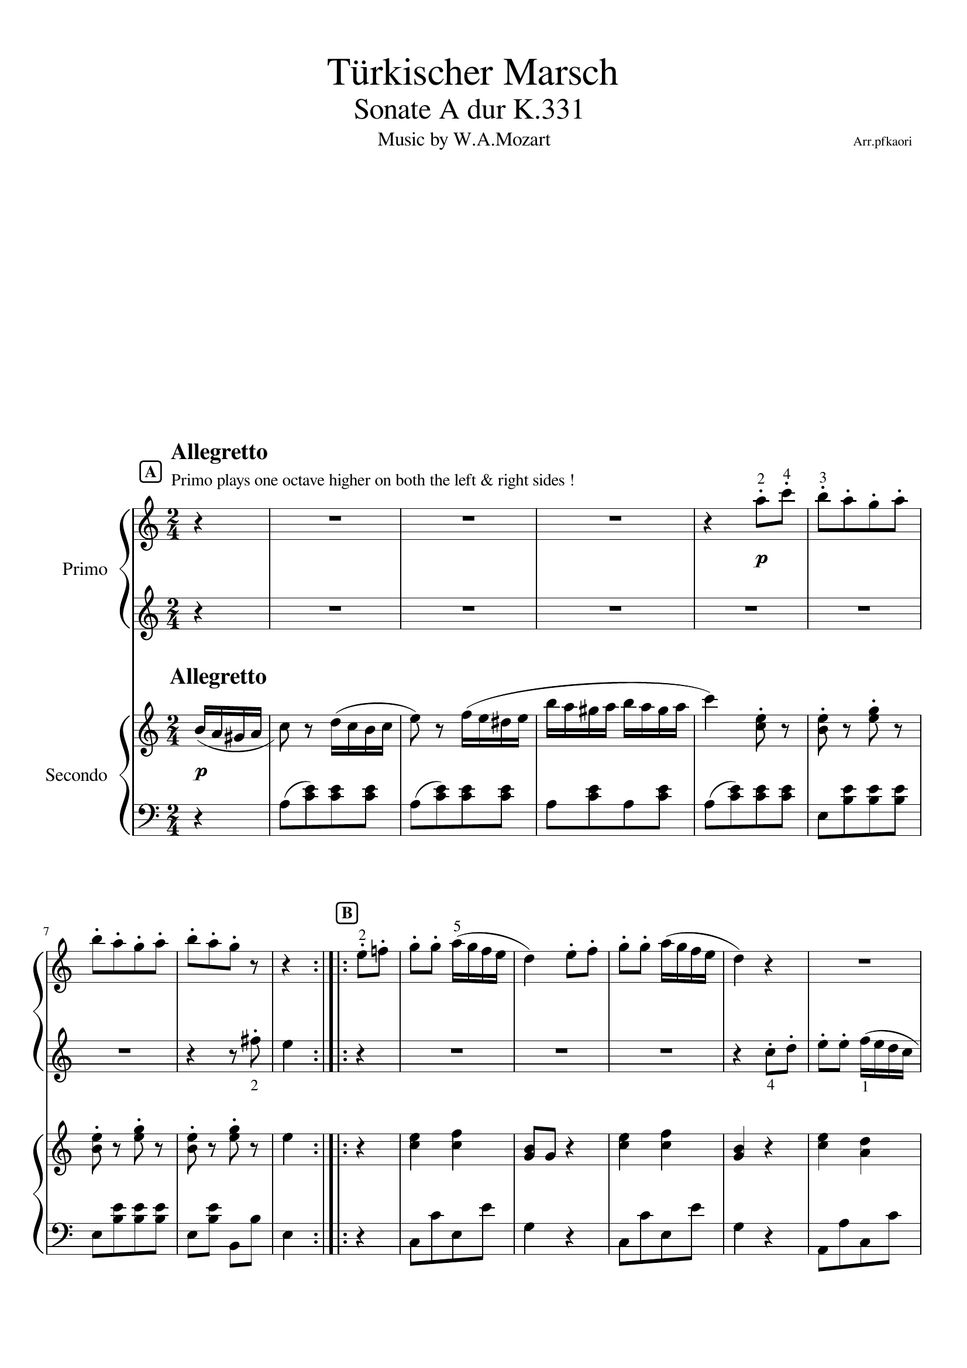 モーツァルト - トルコ行進曲 (スコア譜・ピアノ連弾入門~初級/先生と生徒ver) by pfkaori